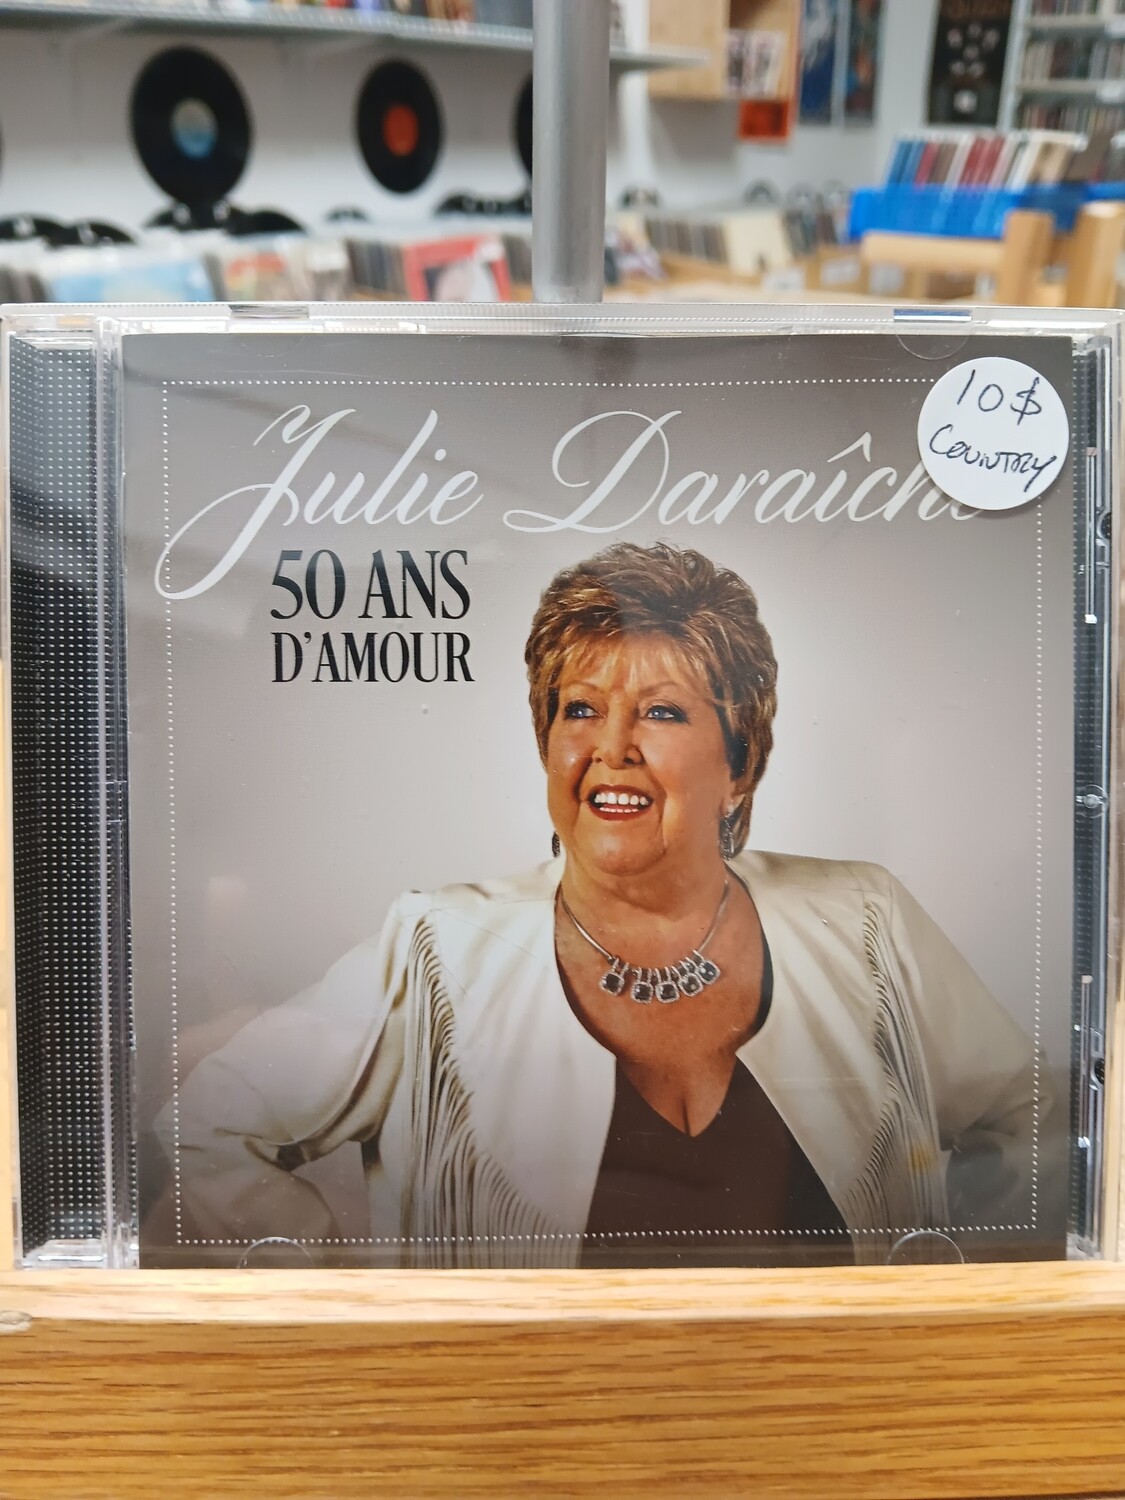 JULIE DARAICHE - 50 ans d'amour (CD)